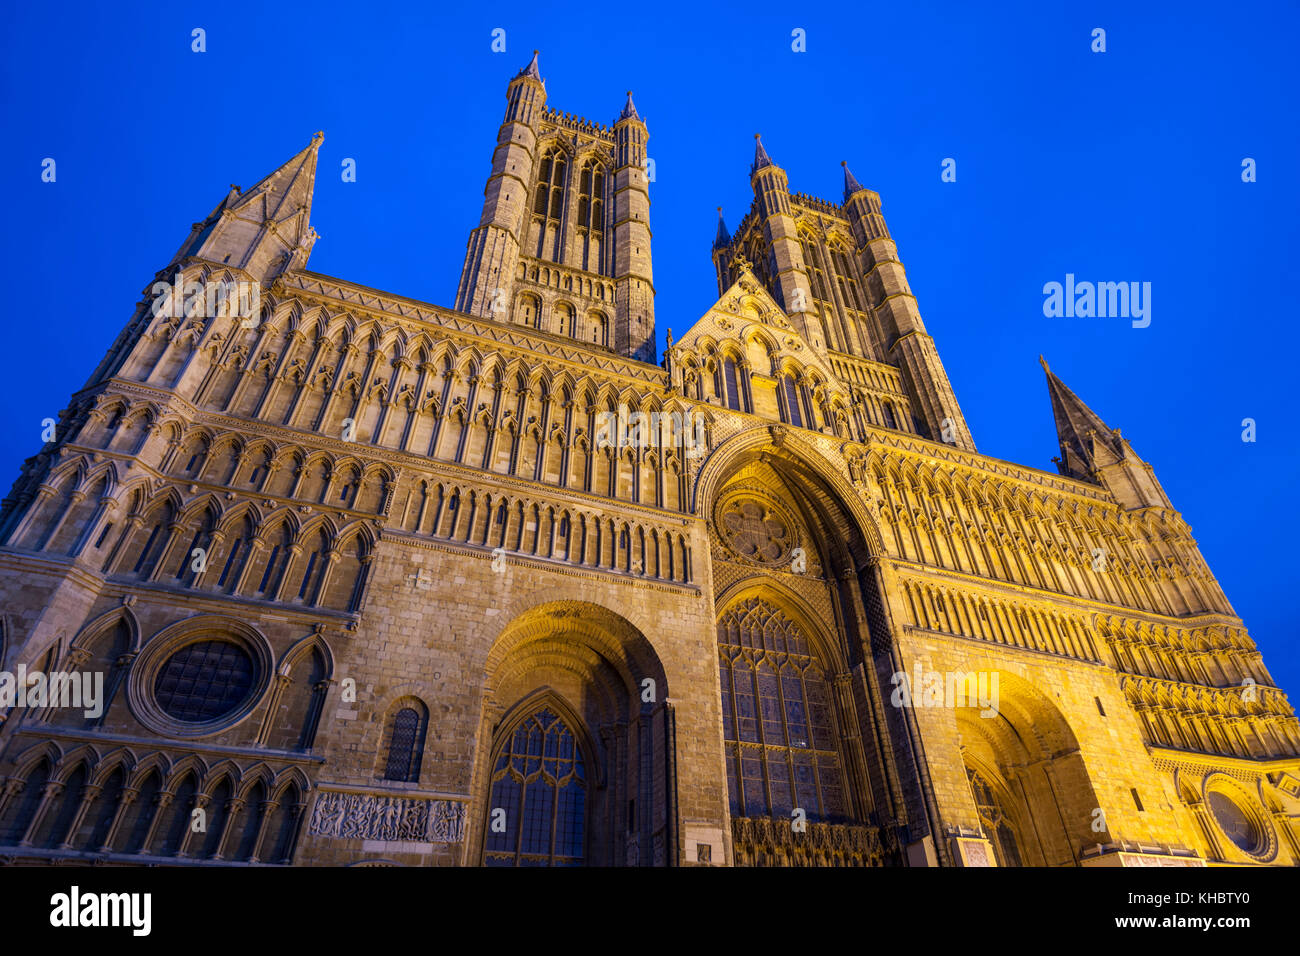 Fronte ovest della Cattedrale di Lincoln illuminata al crepuscolo, Lincoln, Lincolnshire, Inghilterra, Regno Unito, Europa Foto Stock